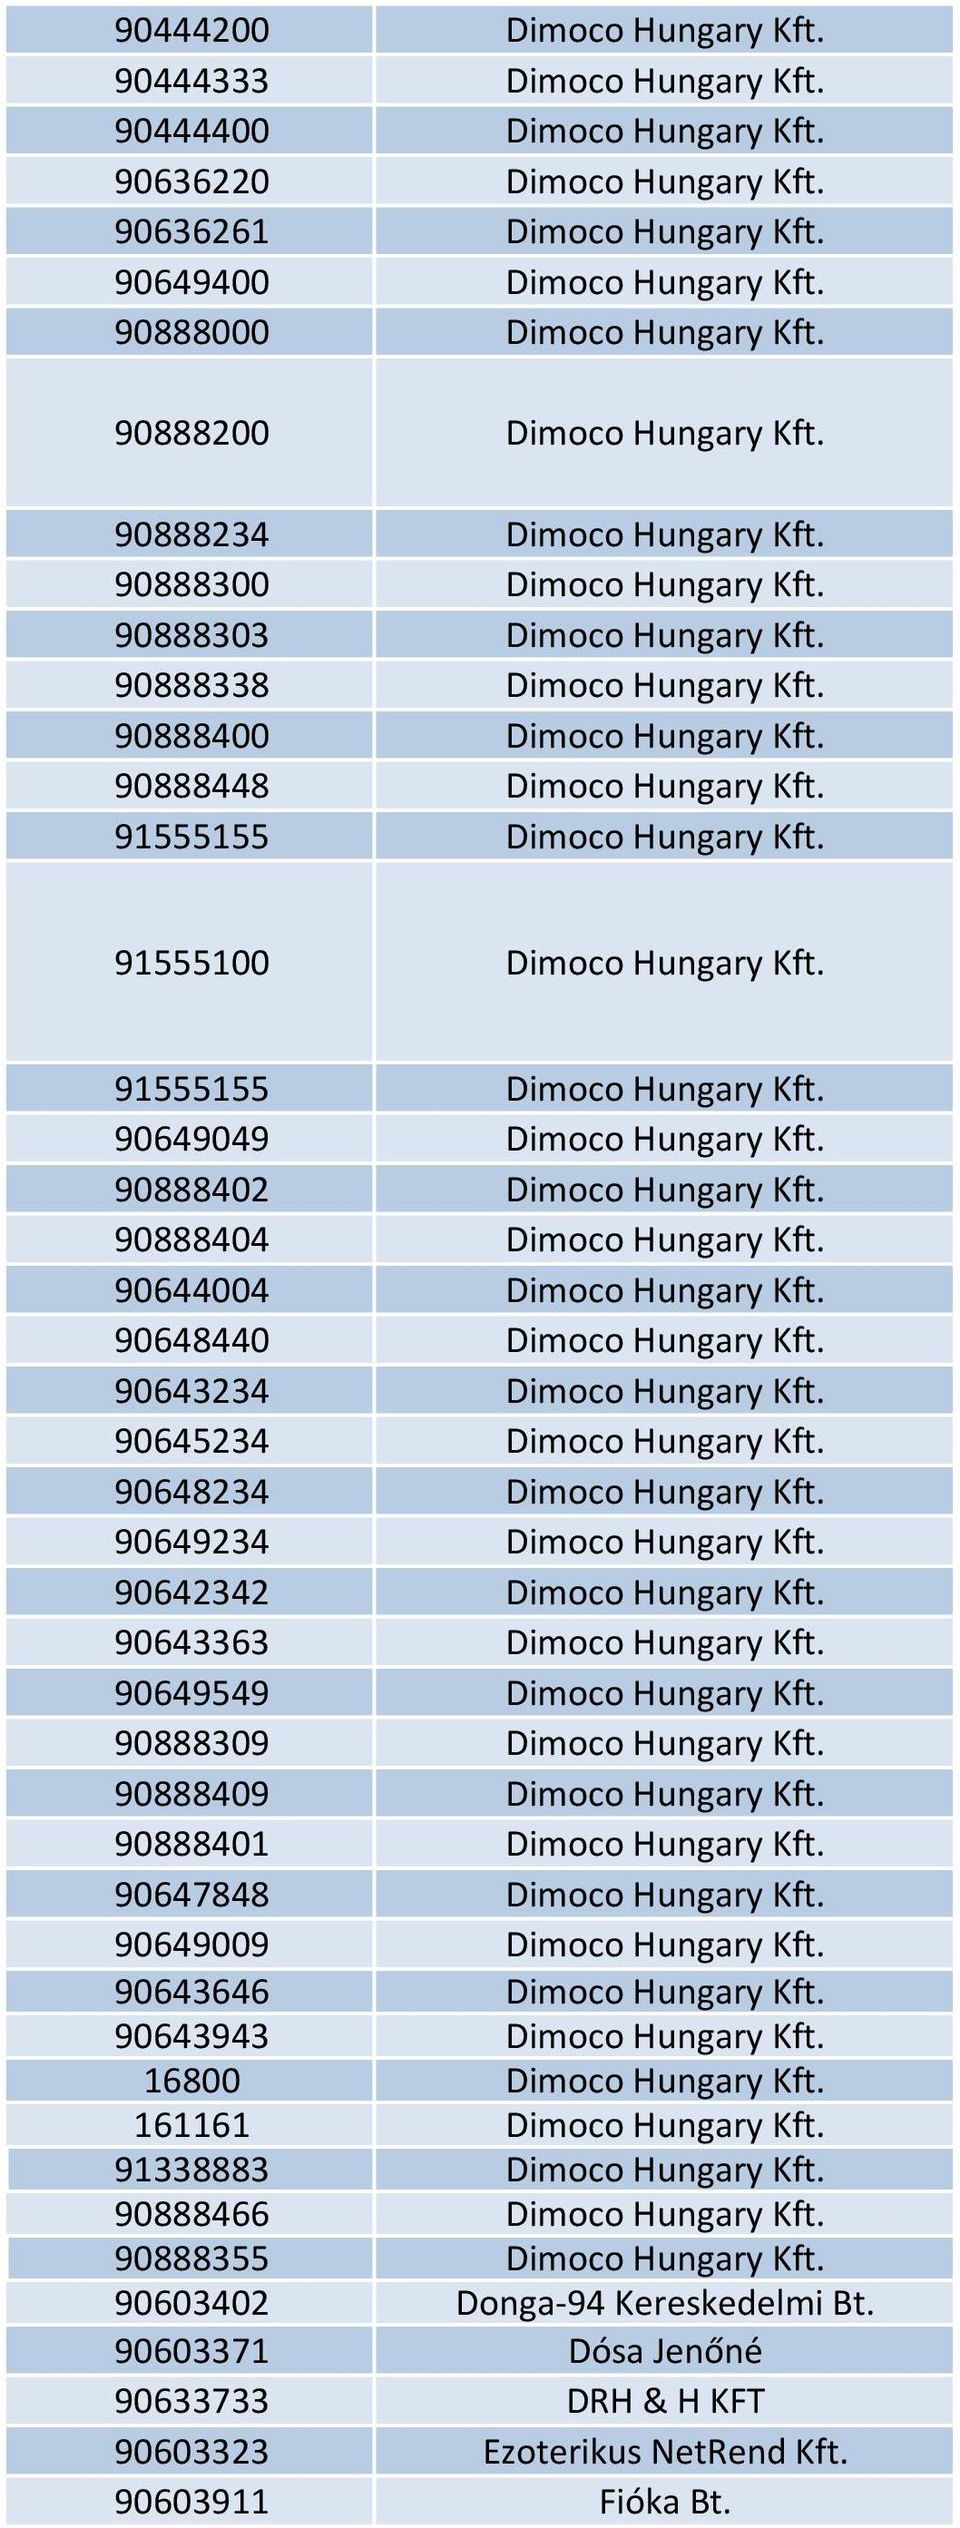 90888400 Dimoco Hungary Kft. 90888448 Dimoco Hungary Kft. 91555155 Dimoco Hungary Kft. 91555100 Dimoco Hungary Kft. 91555155 Dimoco Hungary Kft. 90649049 Dimoco Hungary Kft.